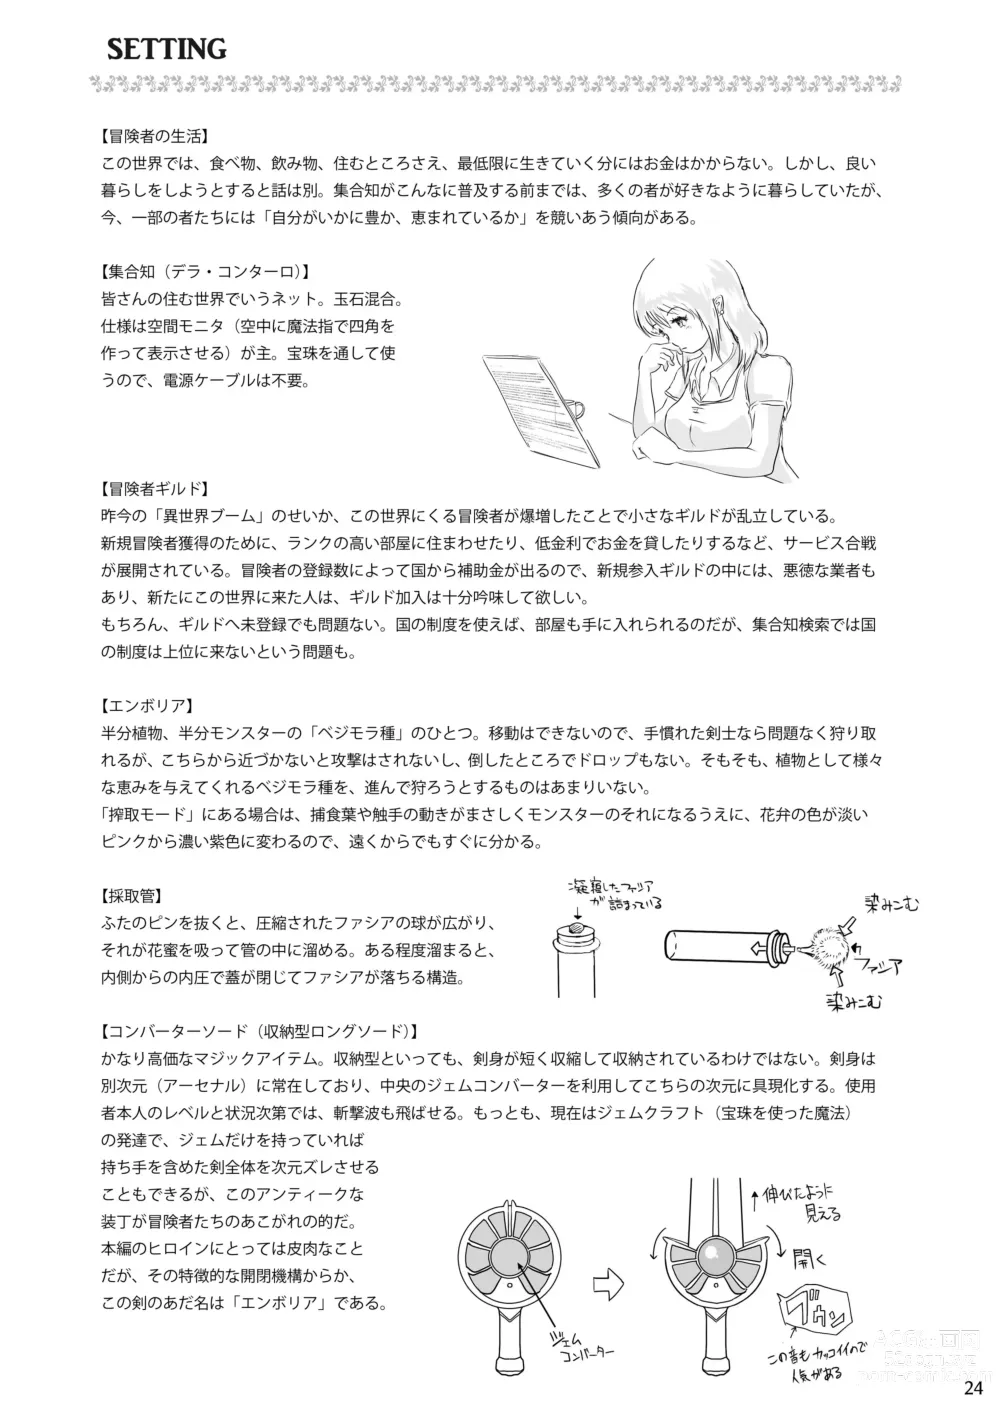 Page 24 of doujinshi Kanba Syokubutu Hannugi Hannominenekisando